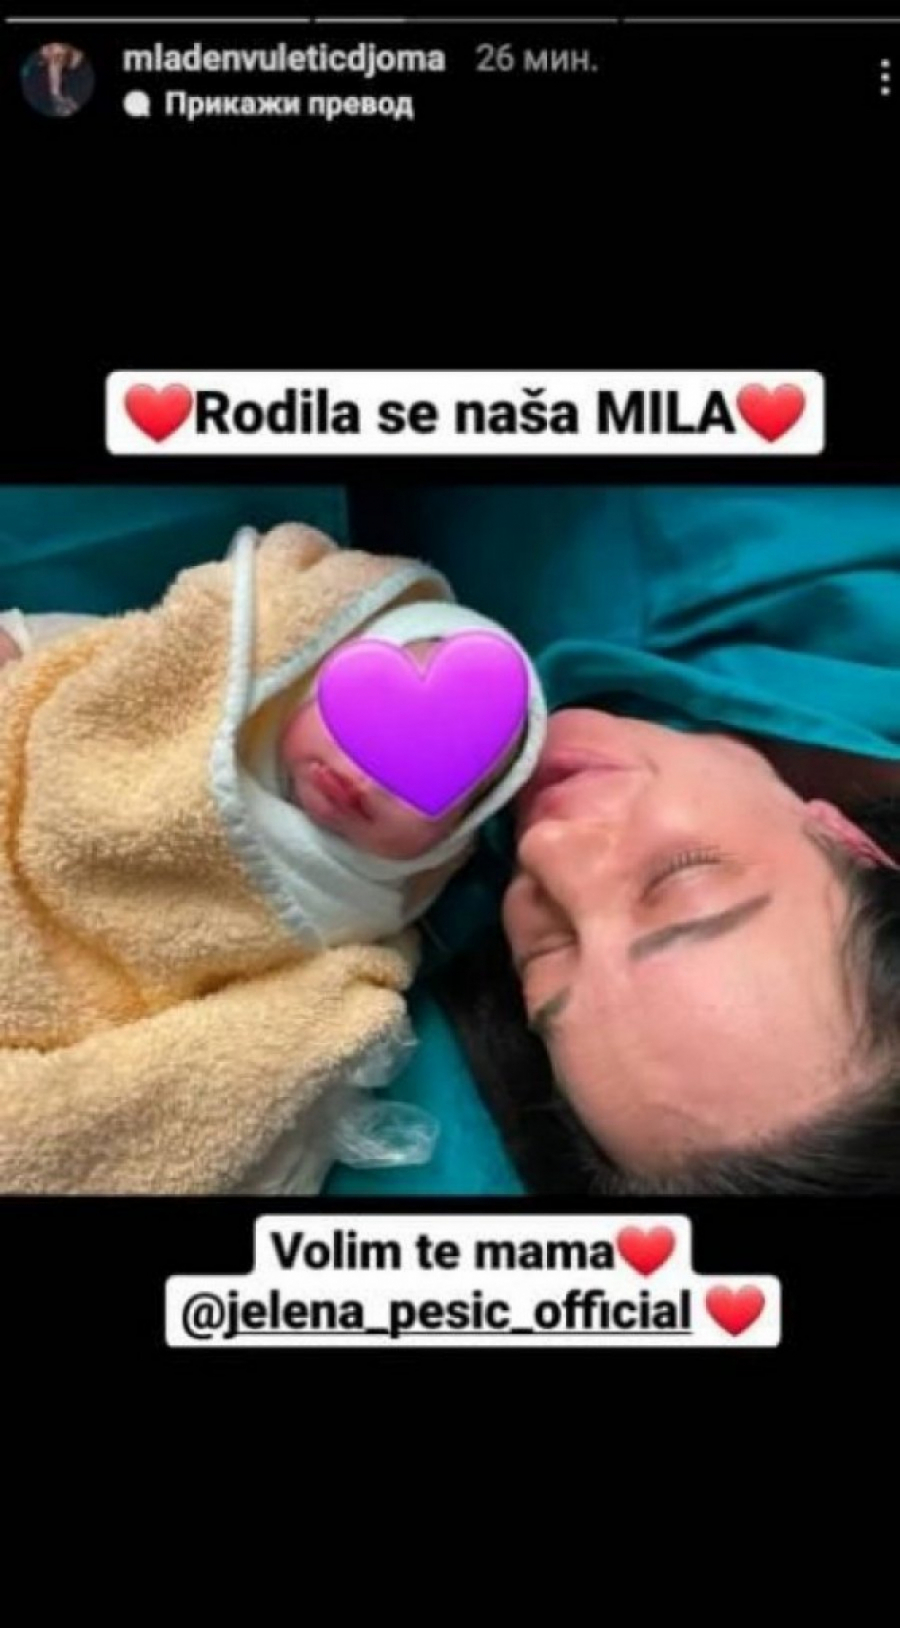 PORODILA SE JELENA PEŠIĆ! Mladen Vuletić objavio emotivnu fotografiju supruge i ćerkice iz bolnice, prizor topi srca (FOTO)